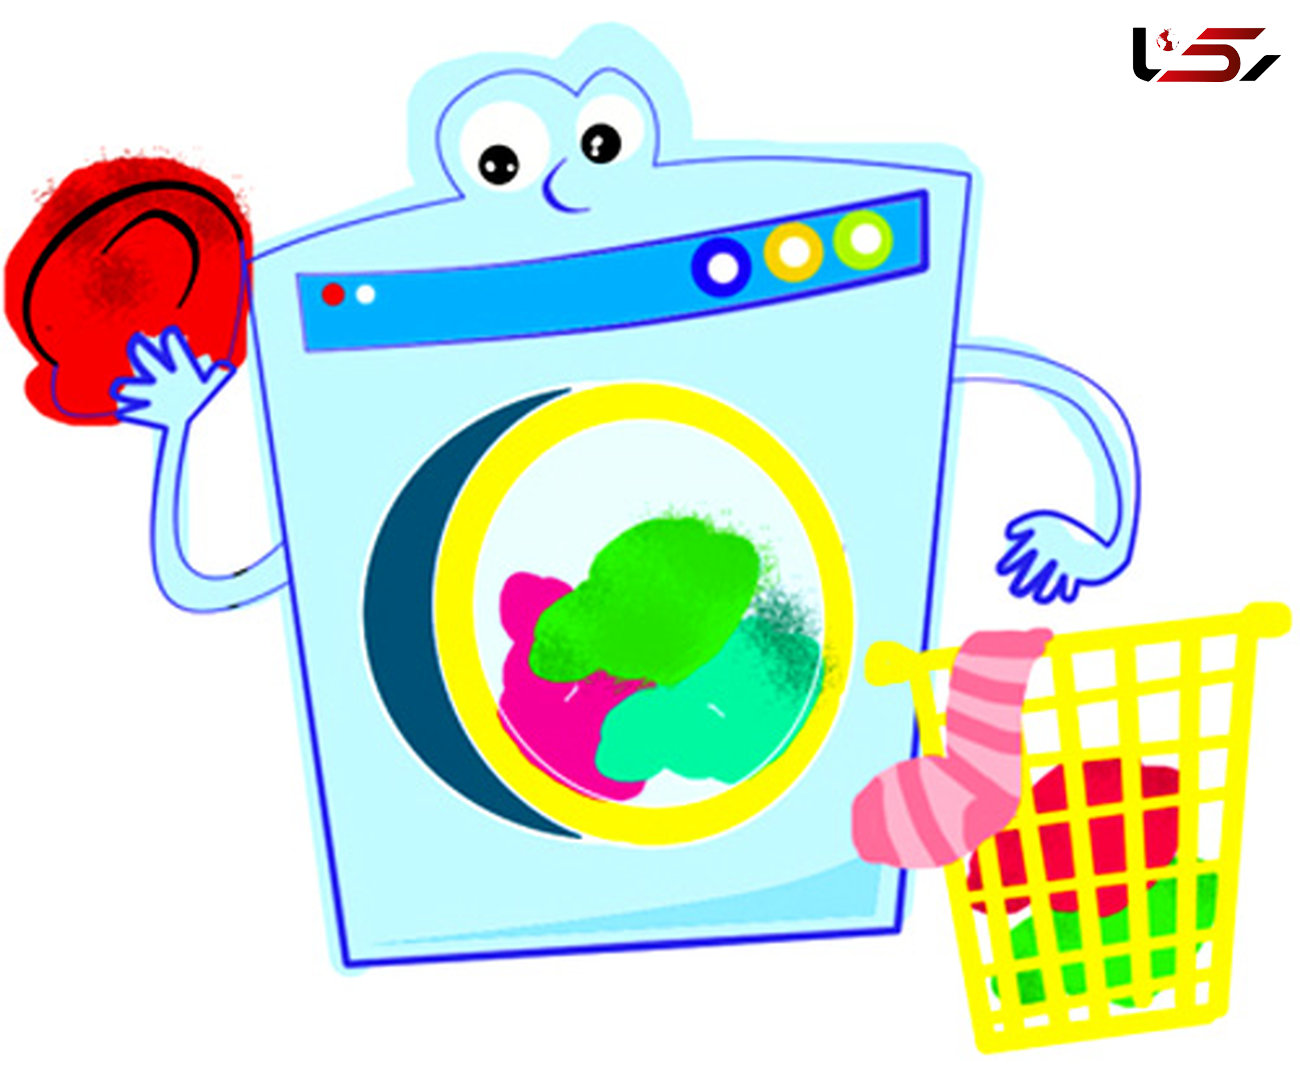 راه خلاص شدن از کپک های ماشین لباسشویی